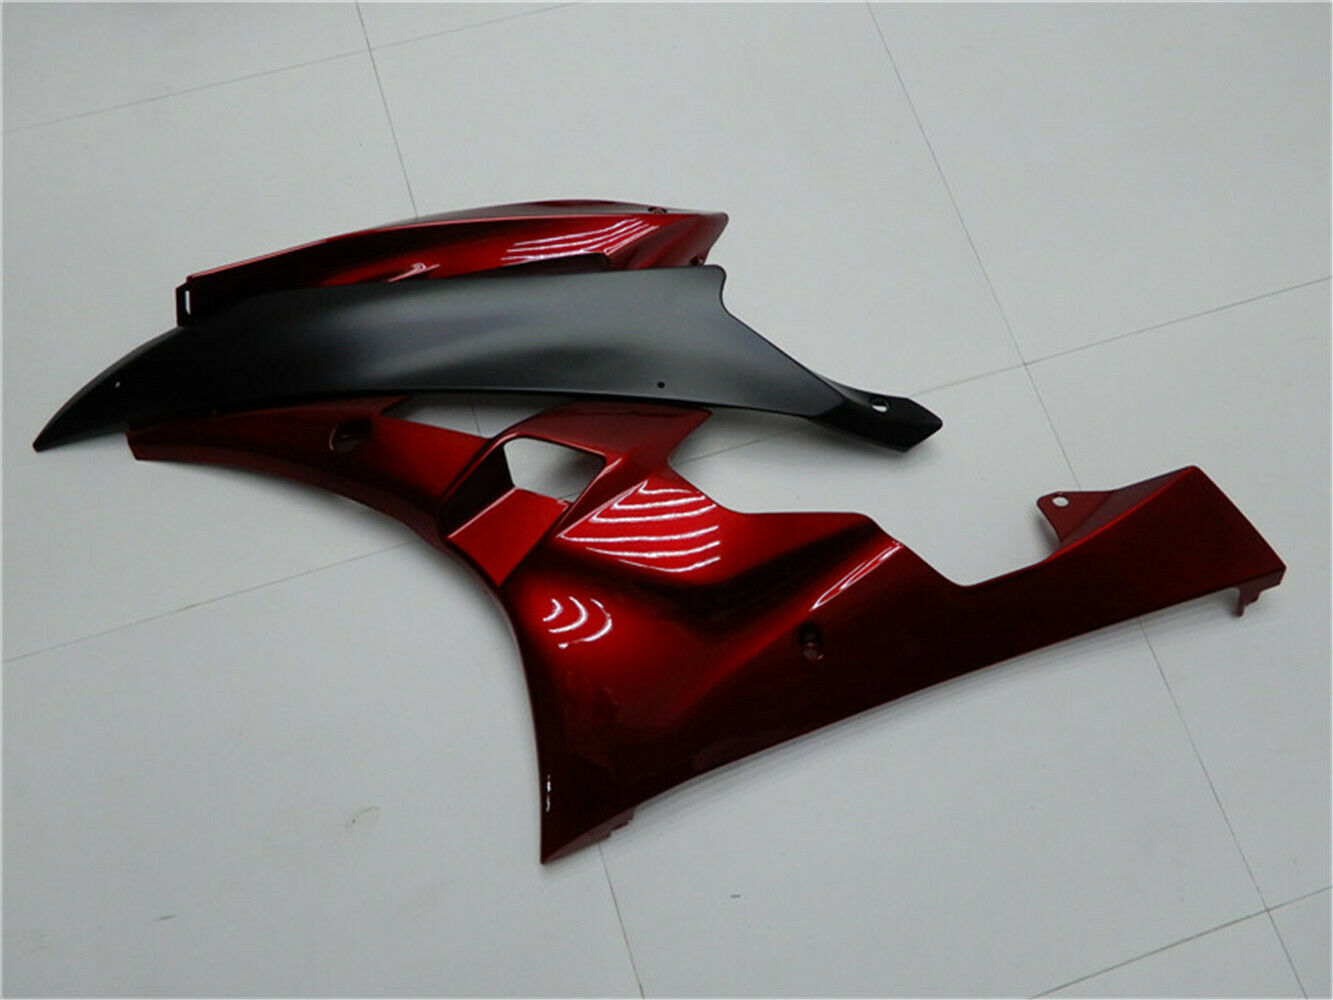 Kit de carenado de plástico de inyección rojo y negro Amotopart para Yamaha 2006 2007 YZF R6 genérico